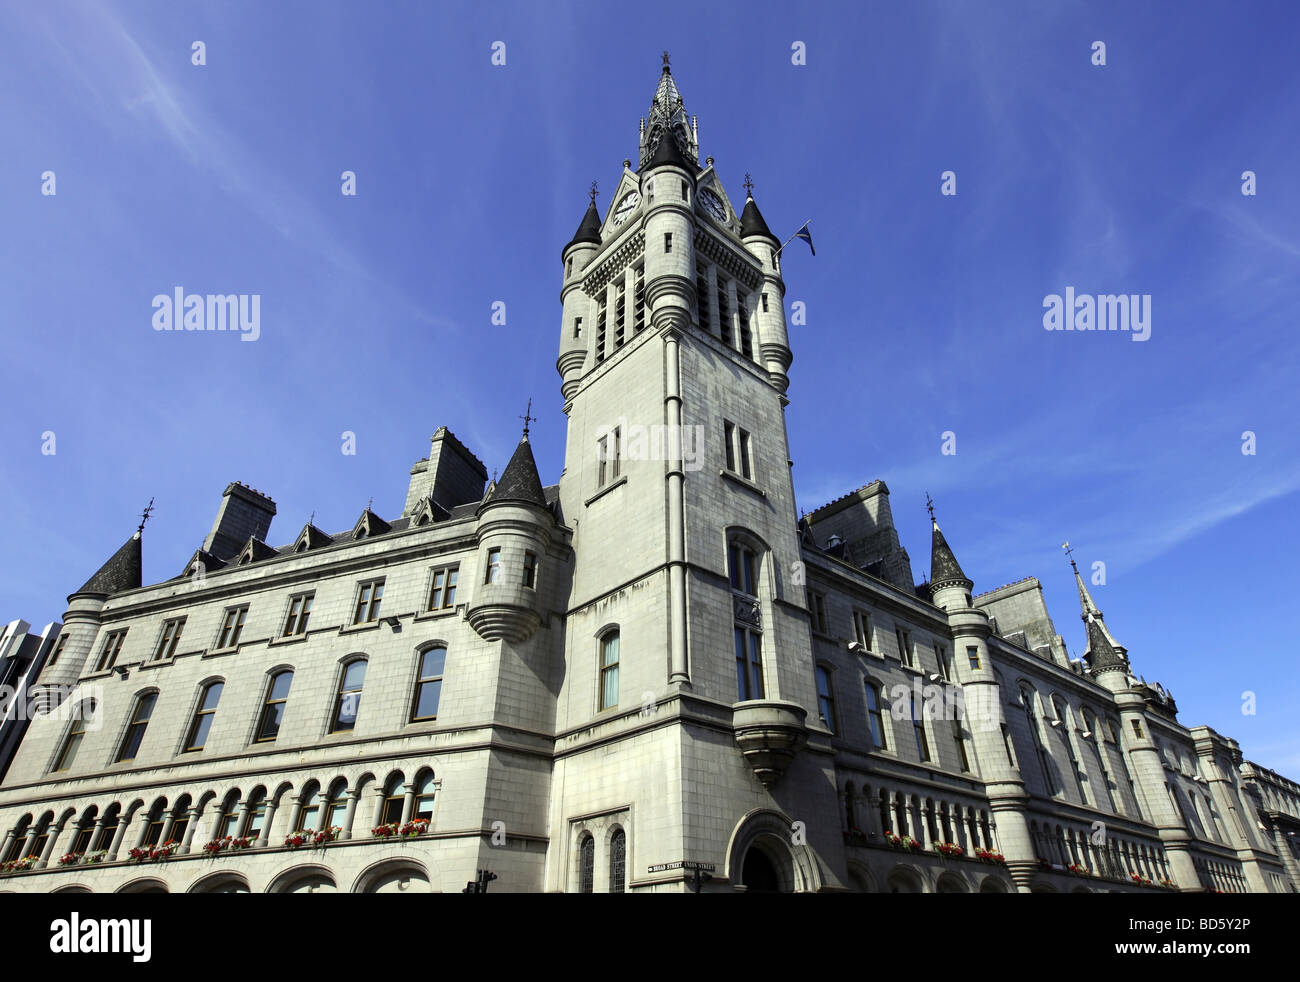 El imponente edificio de granito gris de la casa de pueblo en Aberdeen, Escocia, Reino Unido, que también alberga el sheriff court Foto de stock